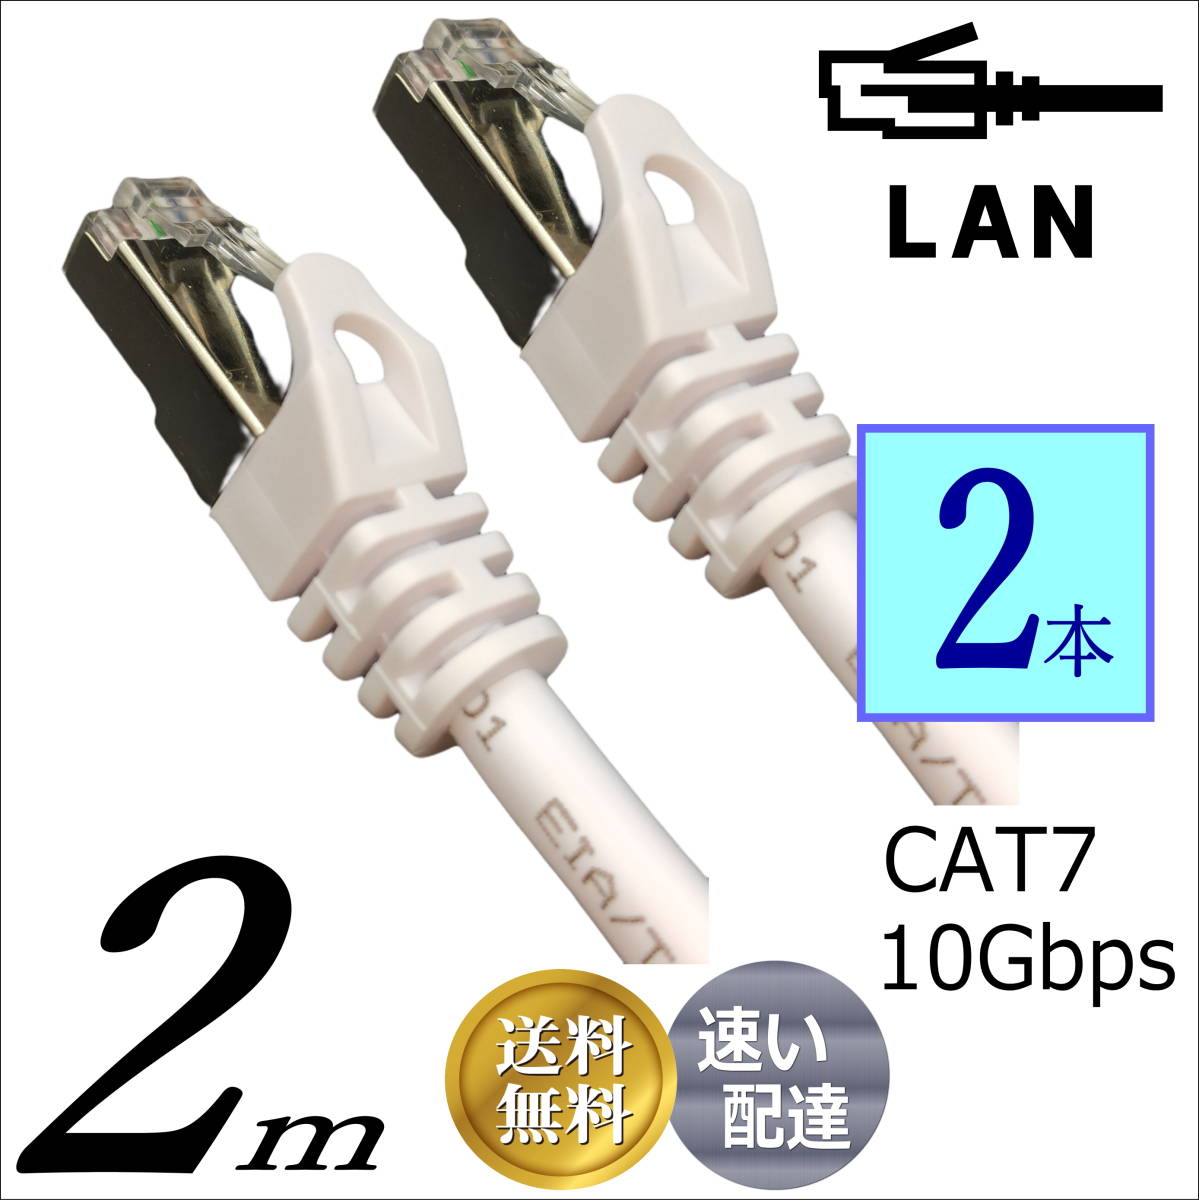 △お買い得【2本セット】LANケーブル 2m Cat7 高速転送10Gbps/伝送帯域600Mhz RJ45コネクタツメ折れ防止 ノイズ対策シールドケーブル7T02x2